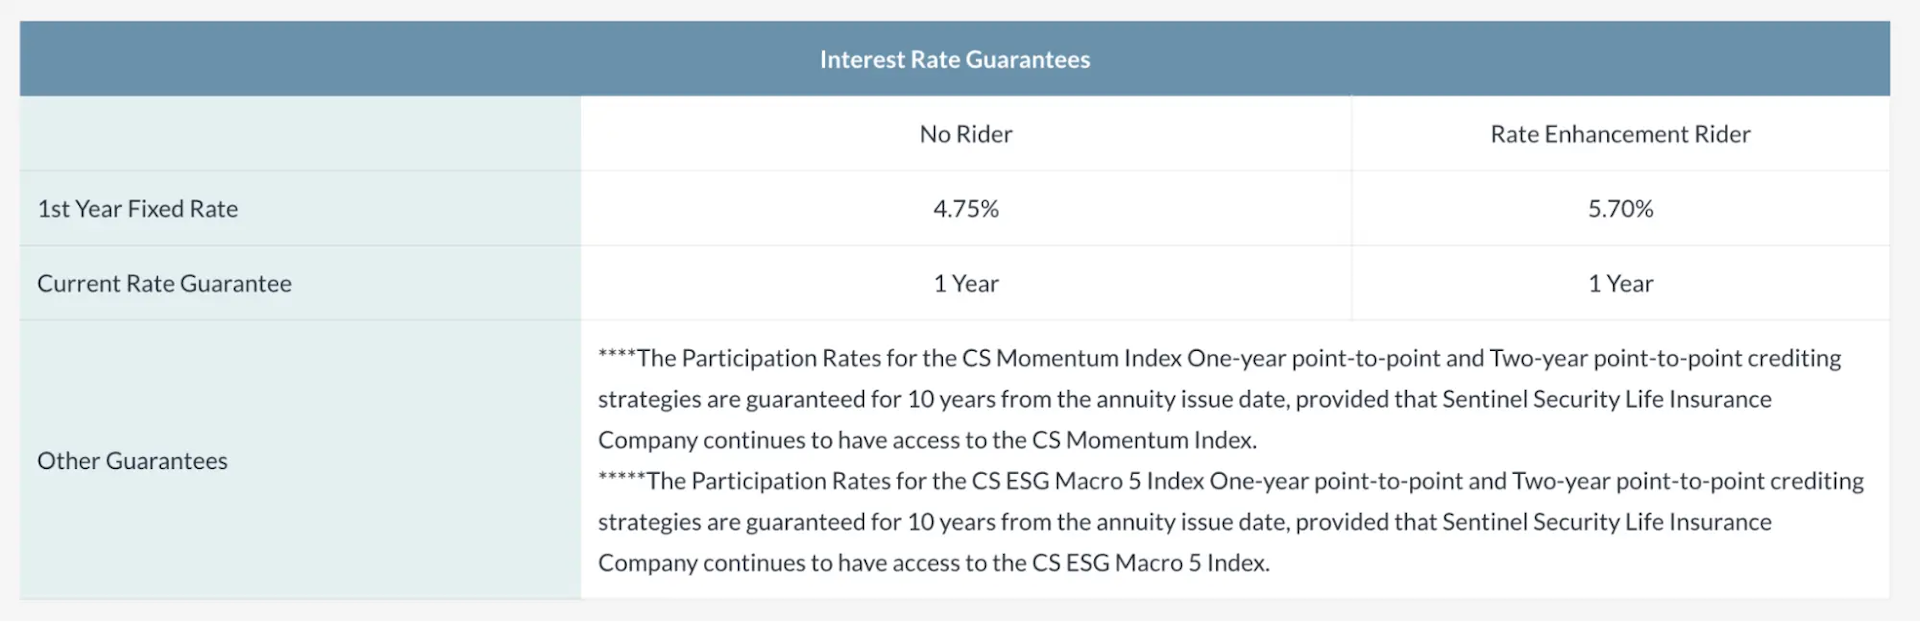 Interest Rate Guarantees SSL